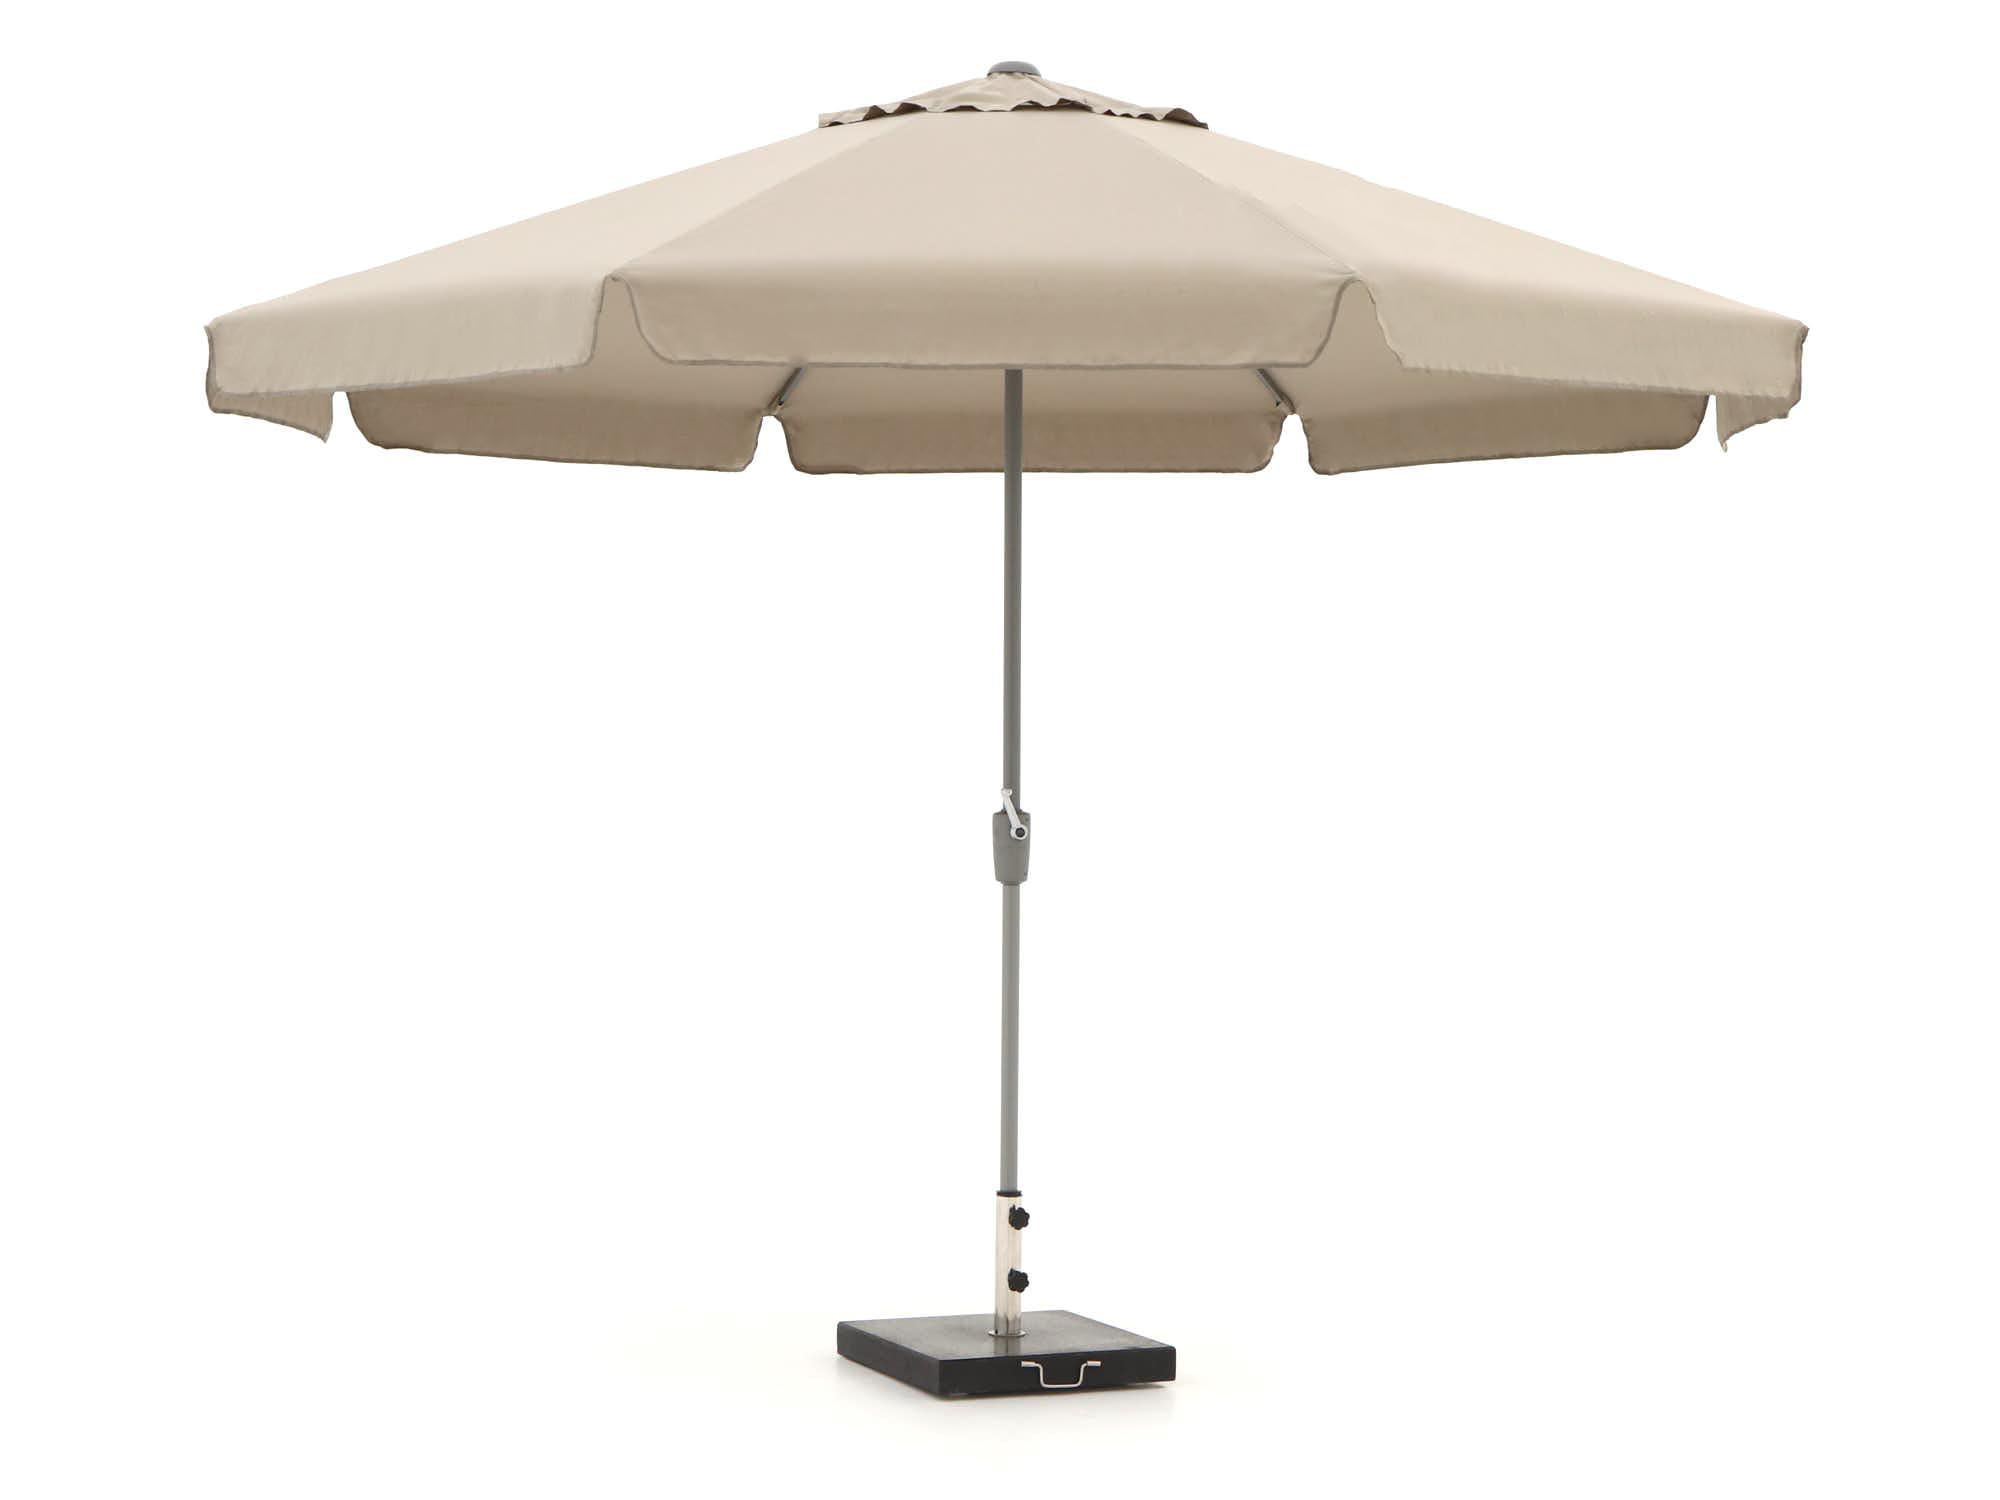 Shadowline Aruba parasol ø 350cm - Laagste prijsgarantie!